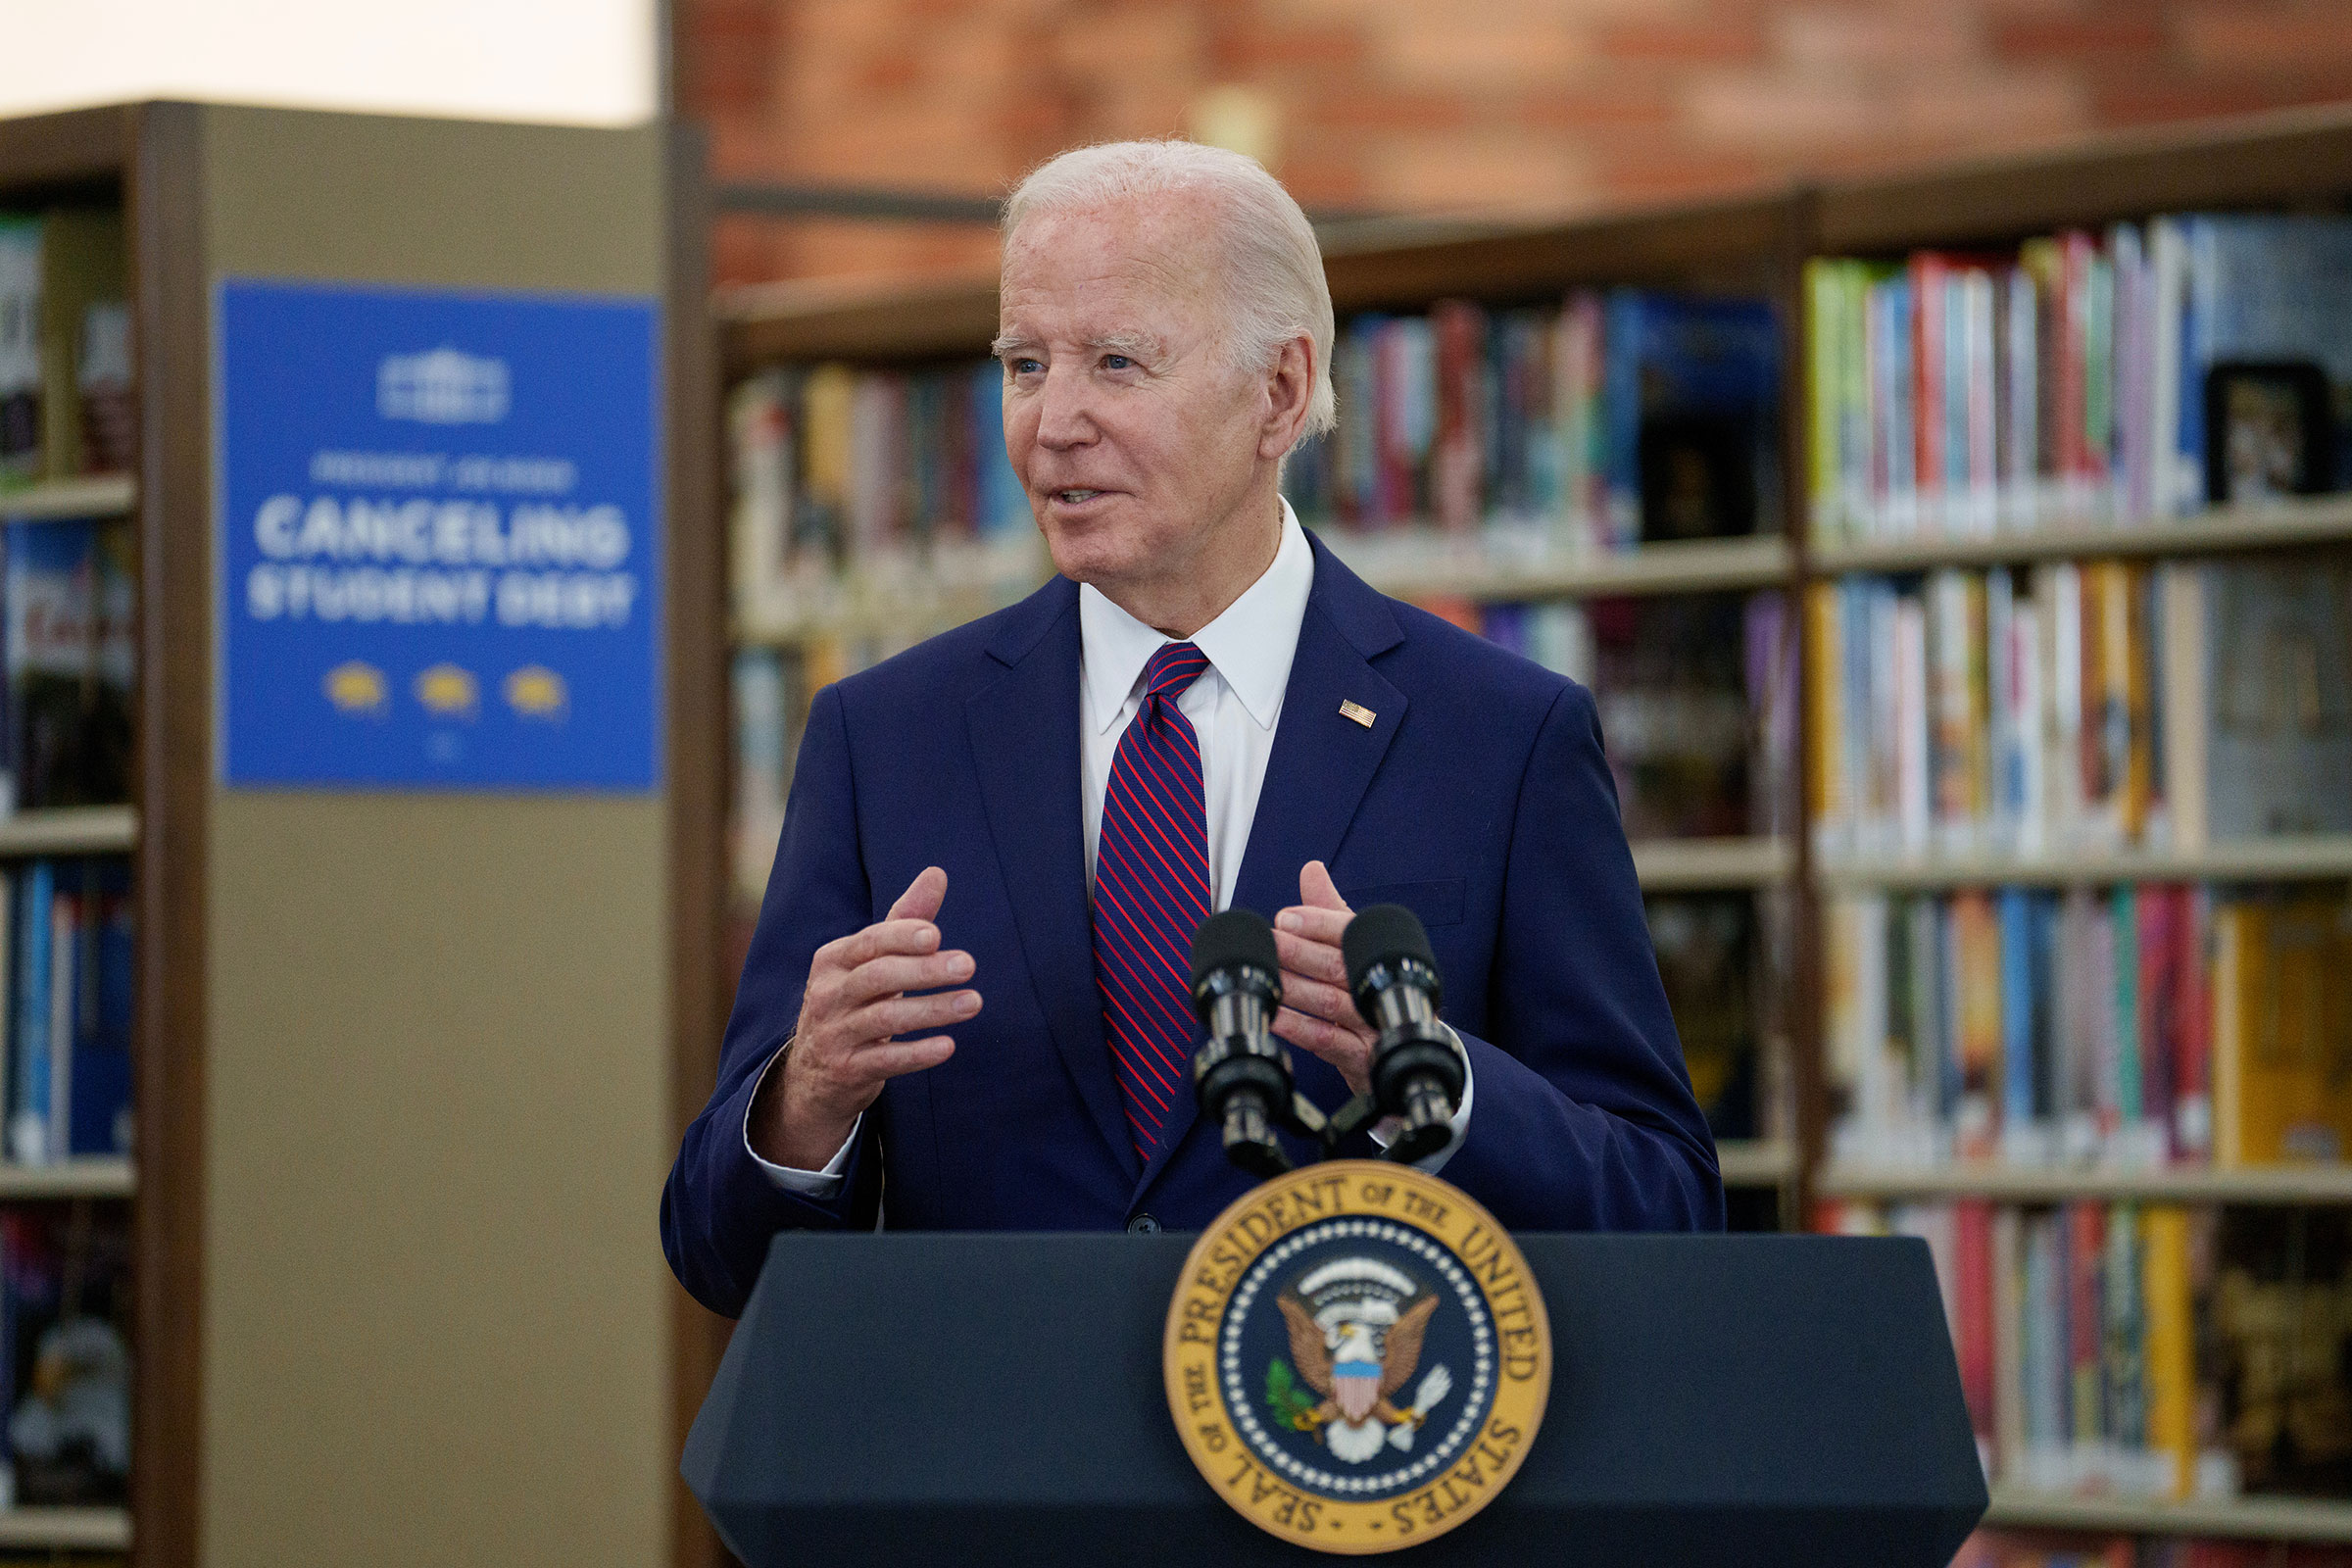 El presidente Joe Biden habla en la biblioteca Julian Dixon de Culver City en Culver City, California, el miércoles 21 de febrero.